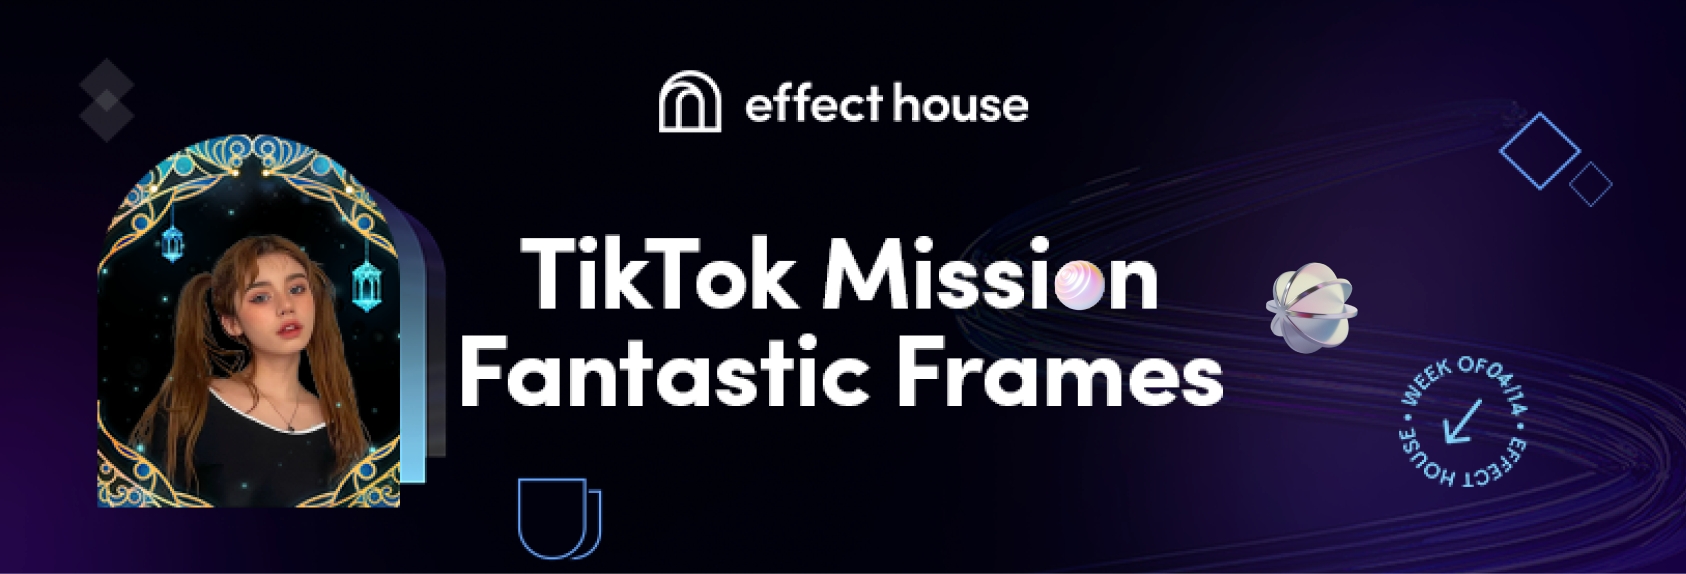 fantastic-frames-mission